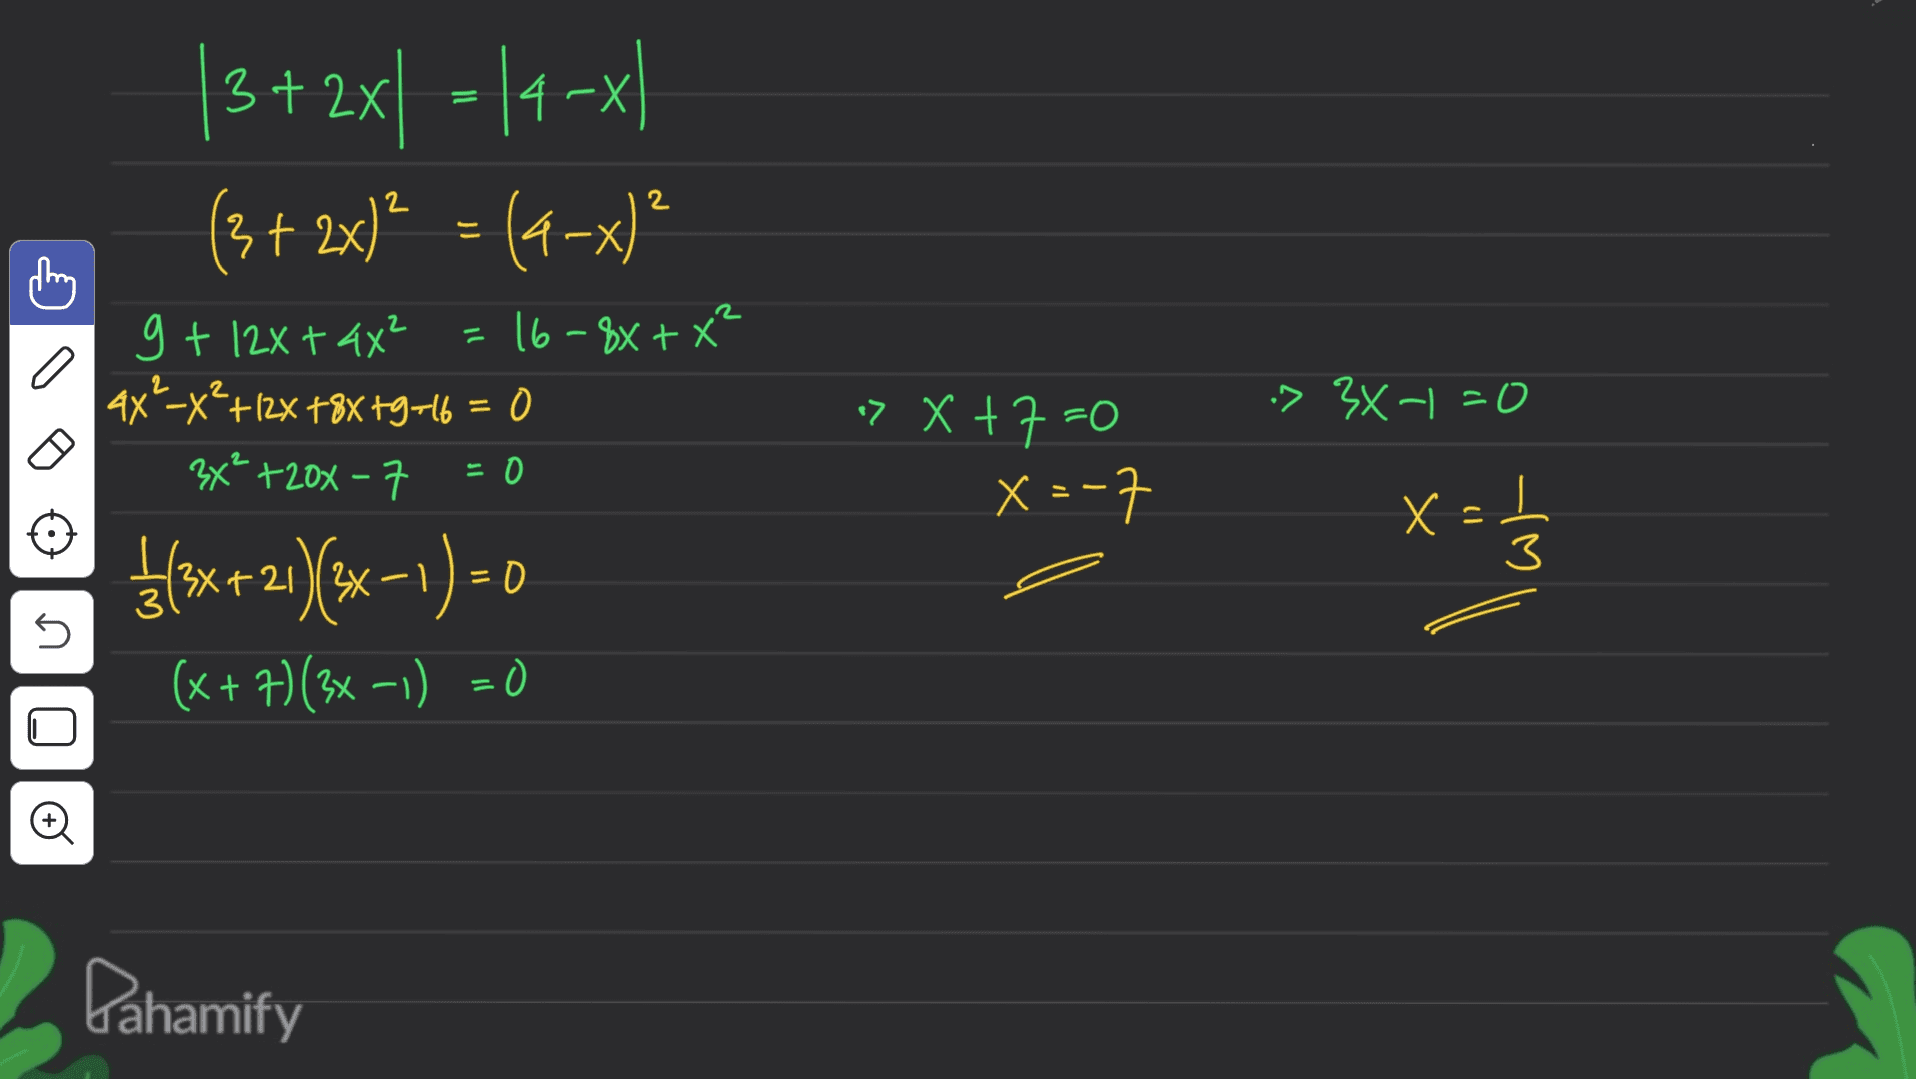 |3+ 2x - 14-xl (3 + 2x)² = (4-x)? 2 g + 12x + 44² =16-8X+ X² 4x²-x? +12% +8x+9746 = 0 3x² +20x - 7 = 0 :> 3X-| -0 > X +7=0 x=-7 ${*+2)/(x-1)=0 x=1 3 5 (x+7)(3x-1) =0 Pahamify 